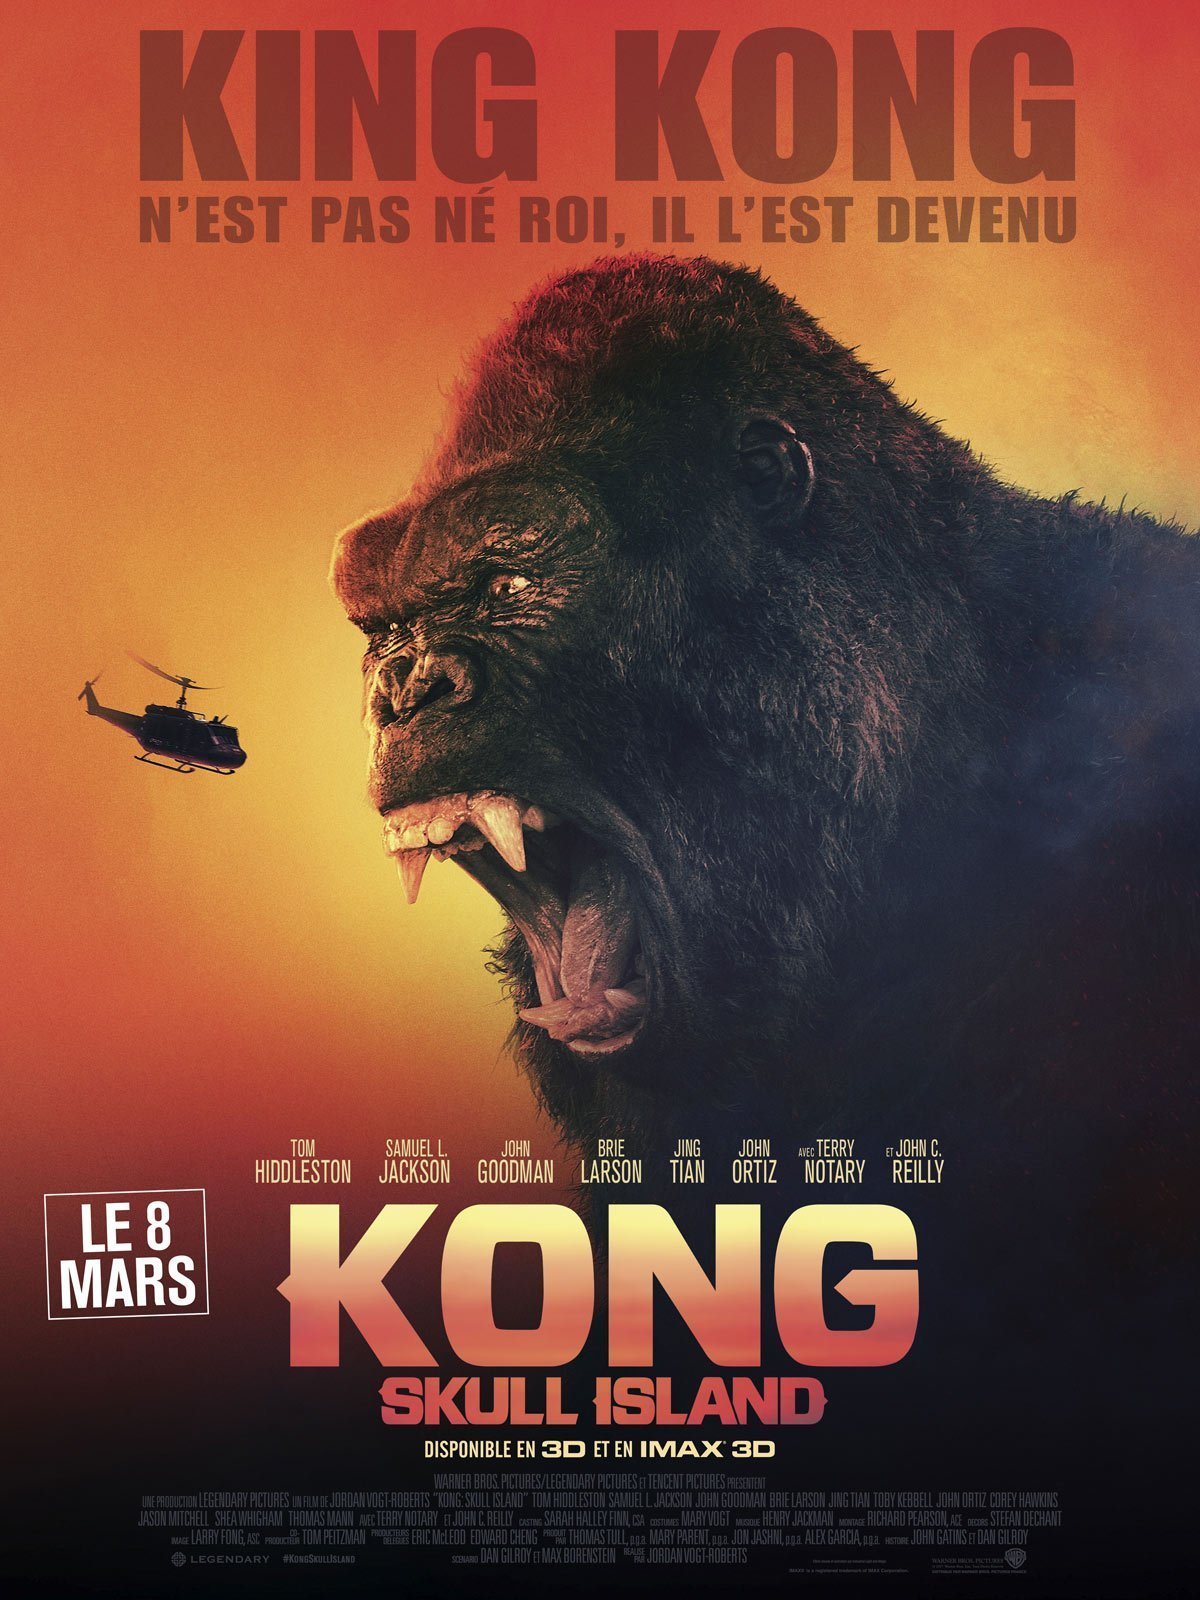 Affiche française de Kong: Skull Island avec la tagline "King Kong n'est pas né roi. Il l'est devenu."